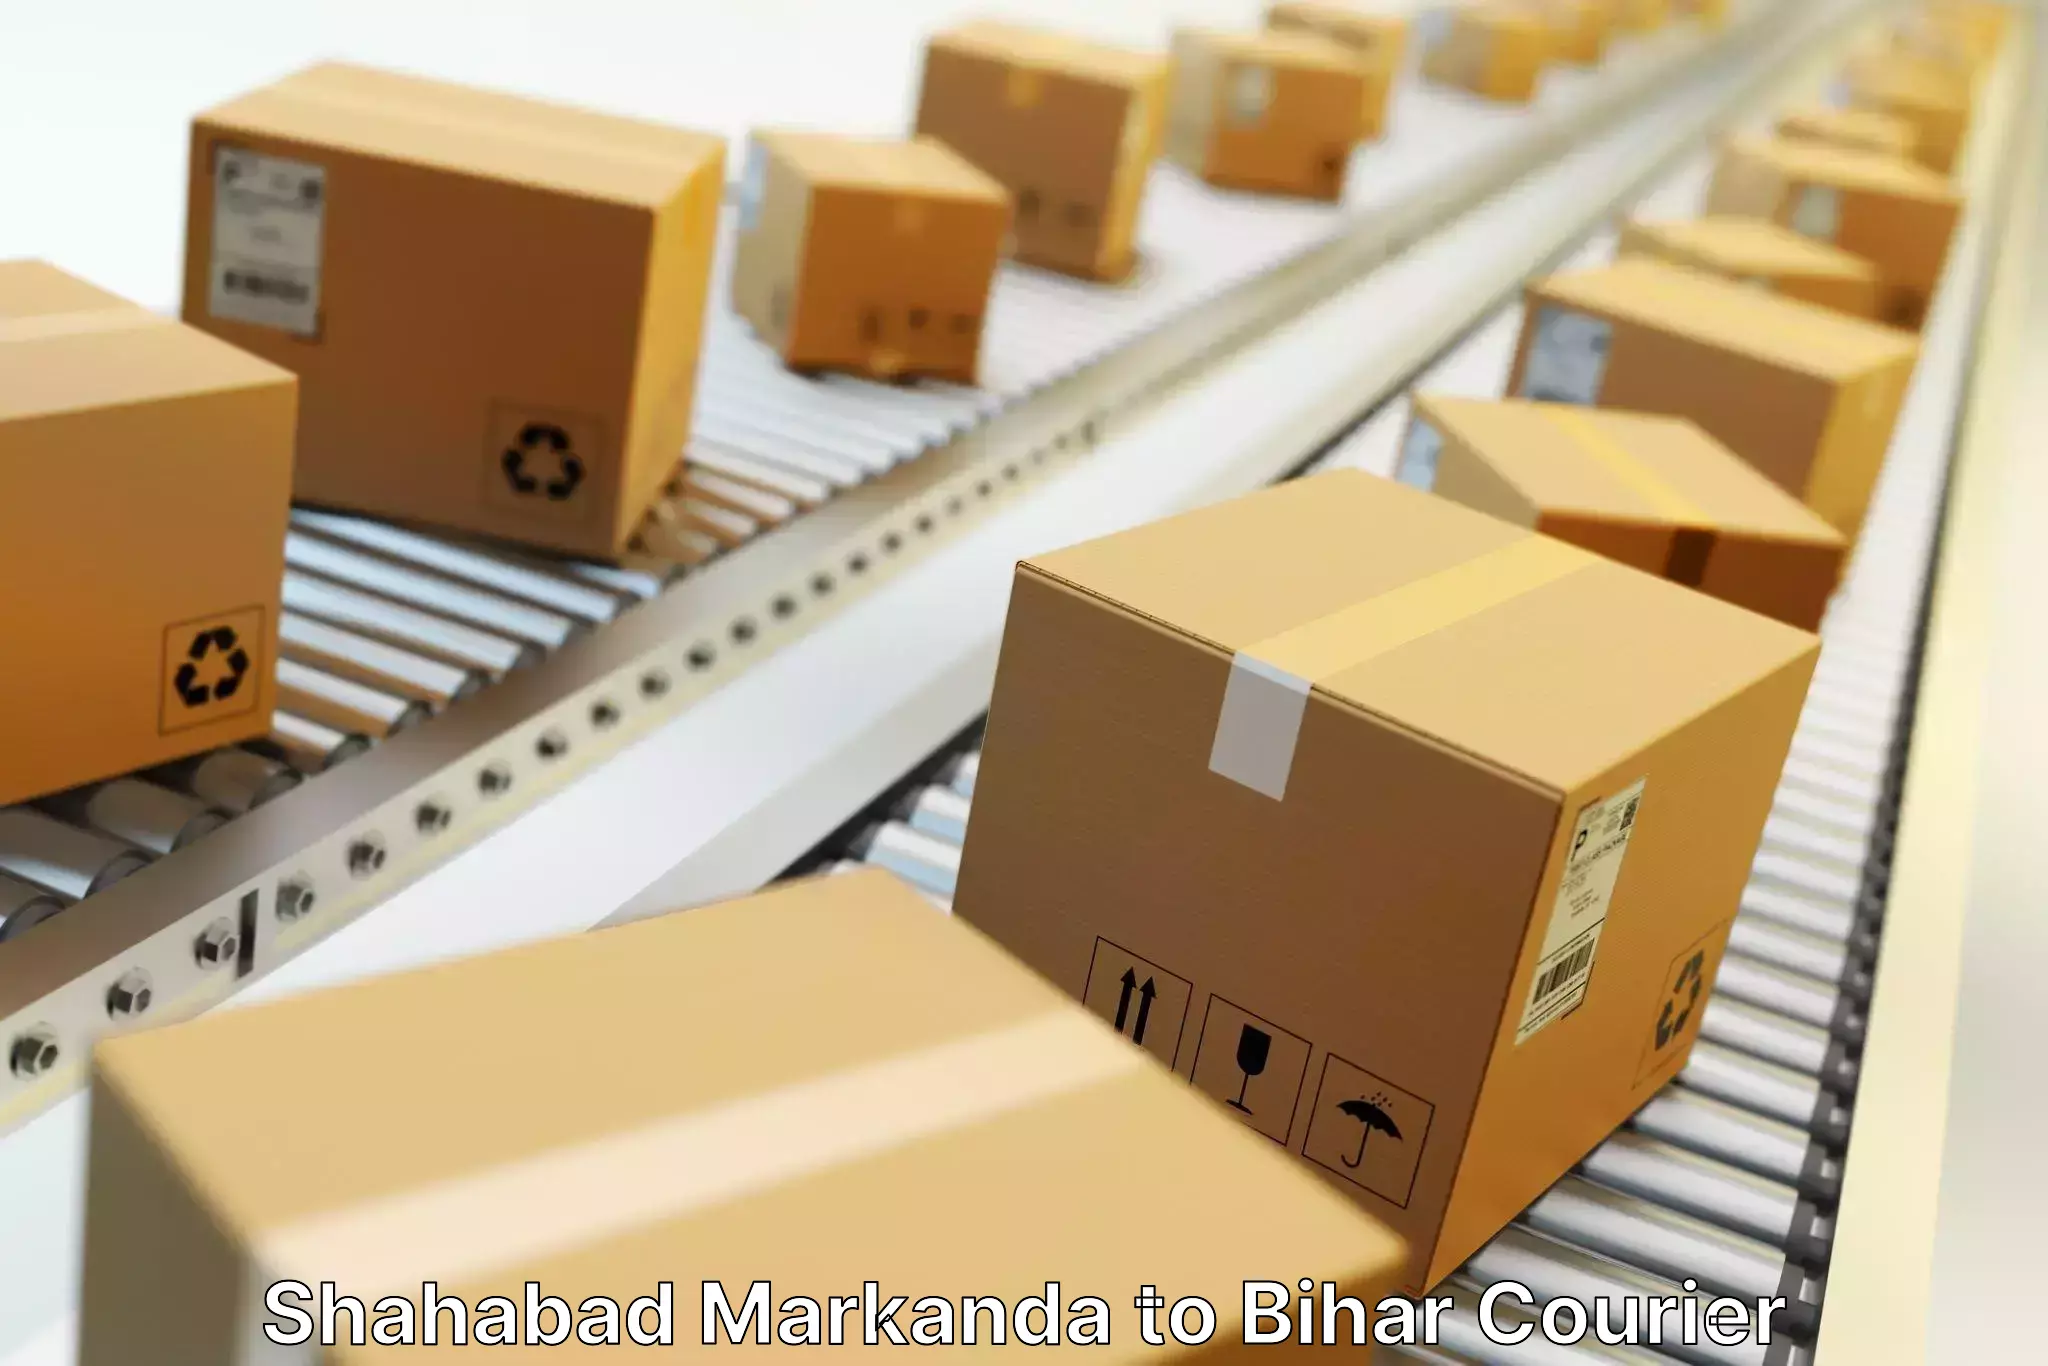 Streamlined delivery processes Shahabad Markanda to Jiwdhara